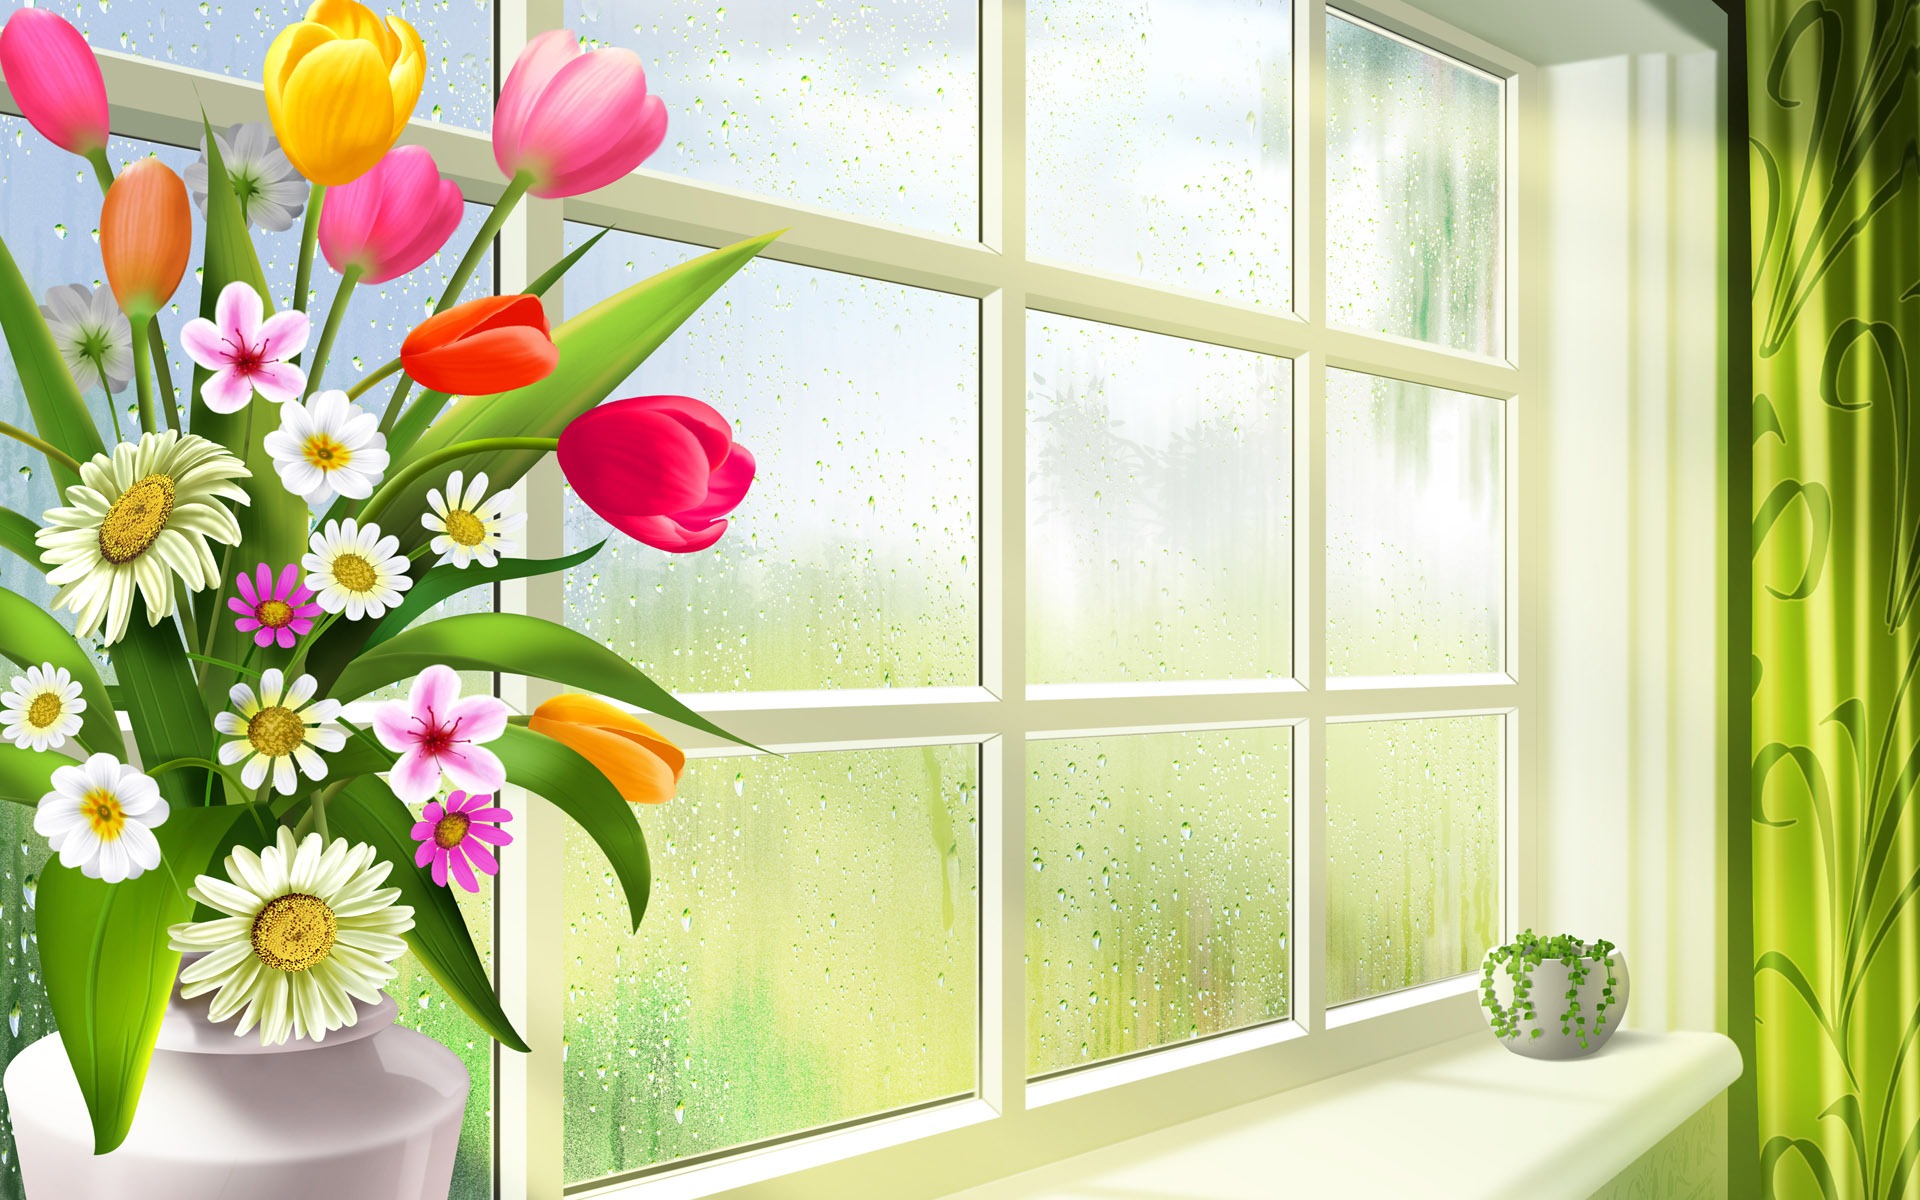 buongiorno hd wallpaper,fiore,finestra,pianta,parete,camera